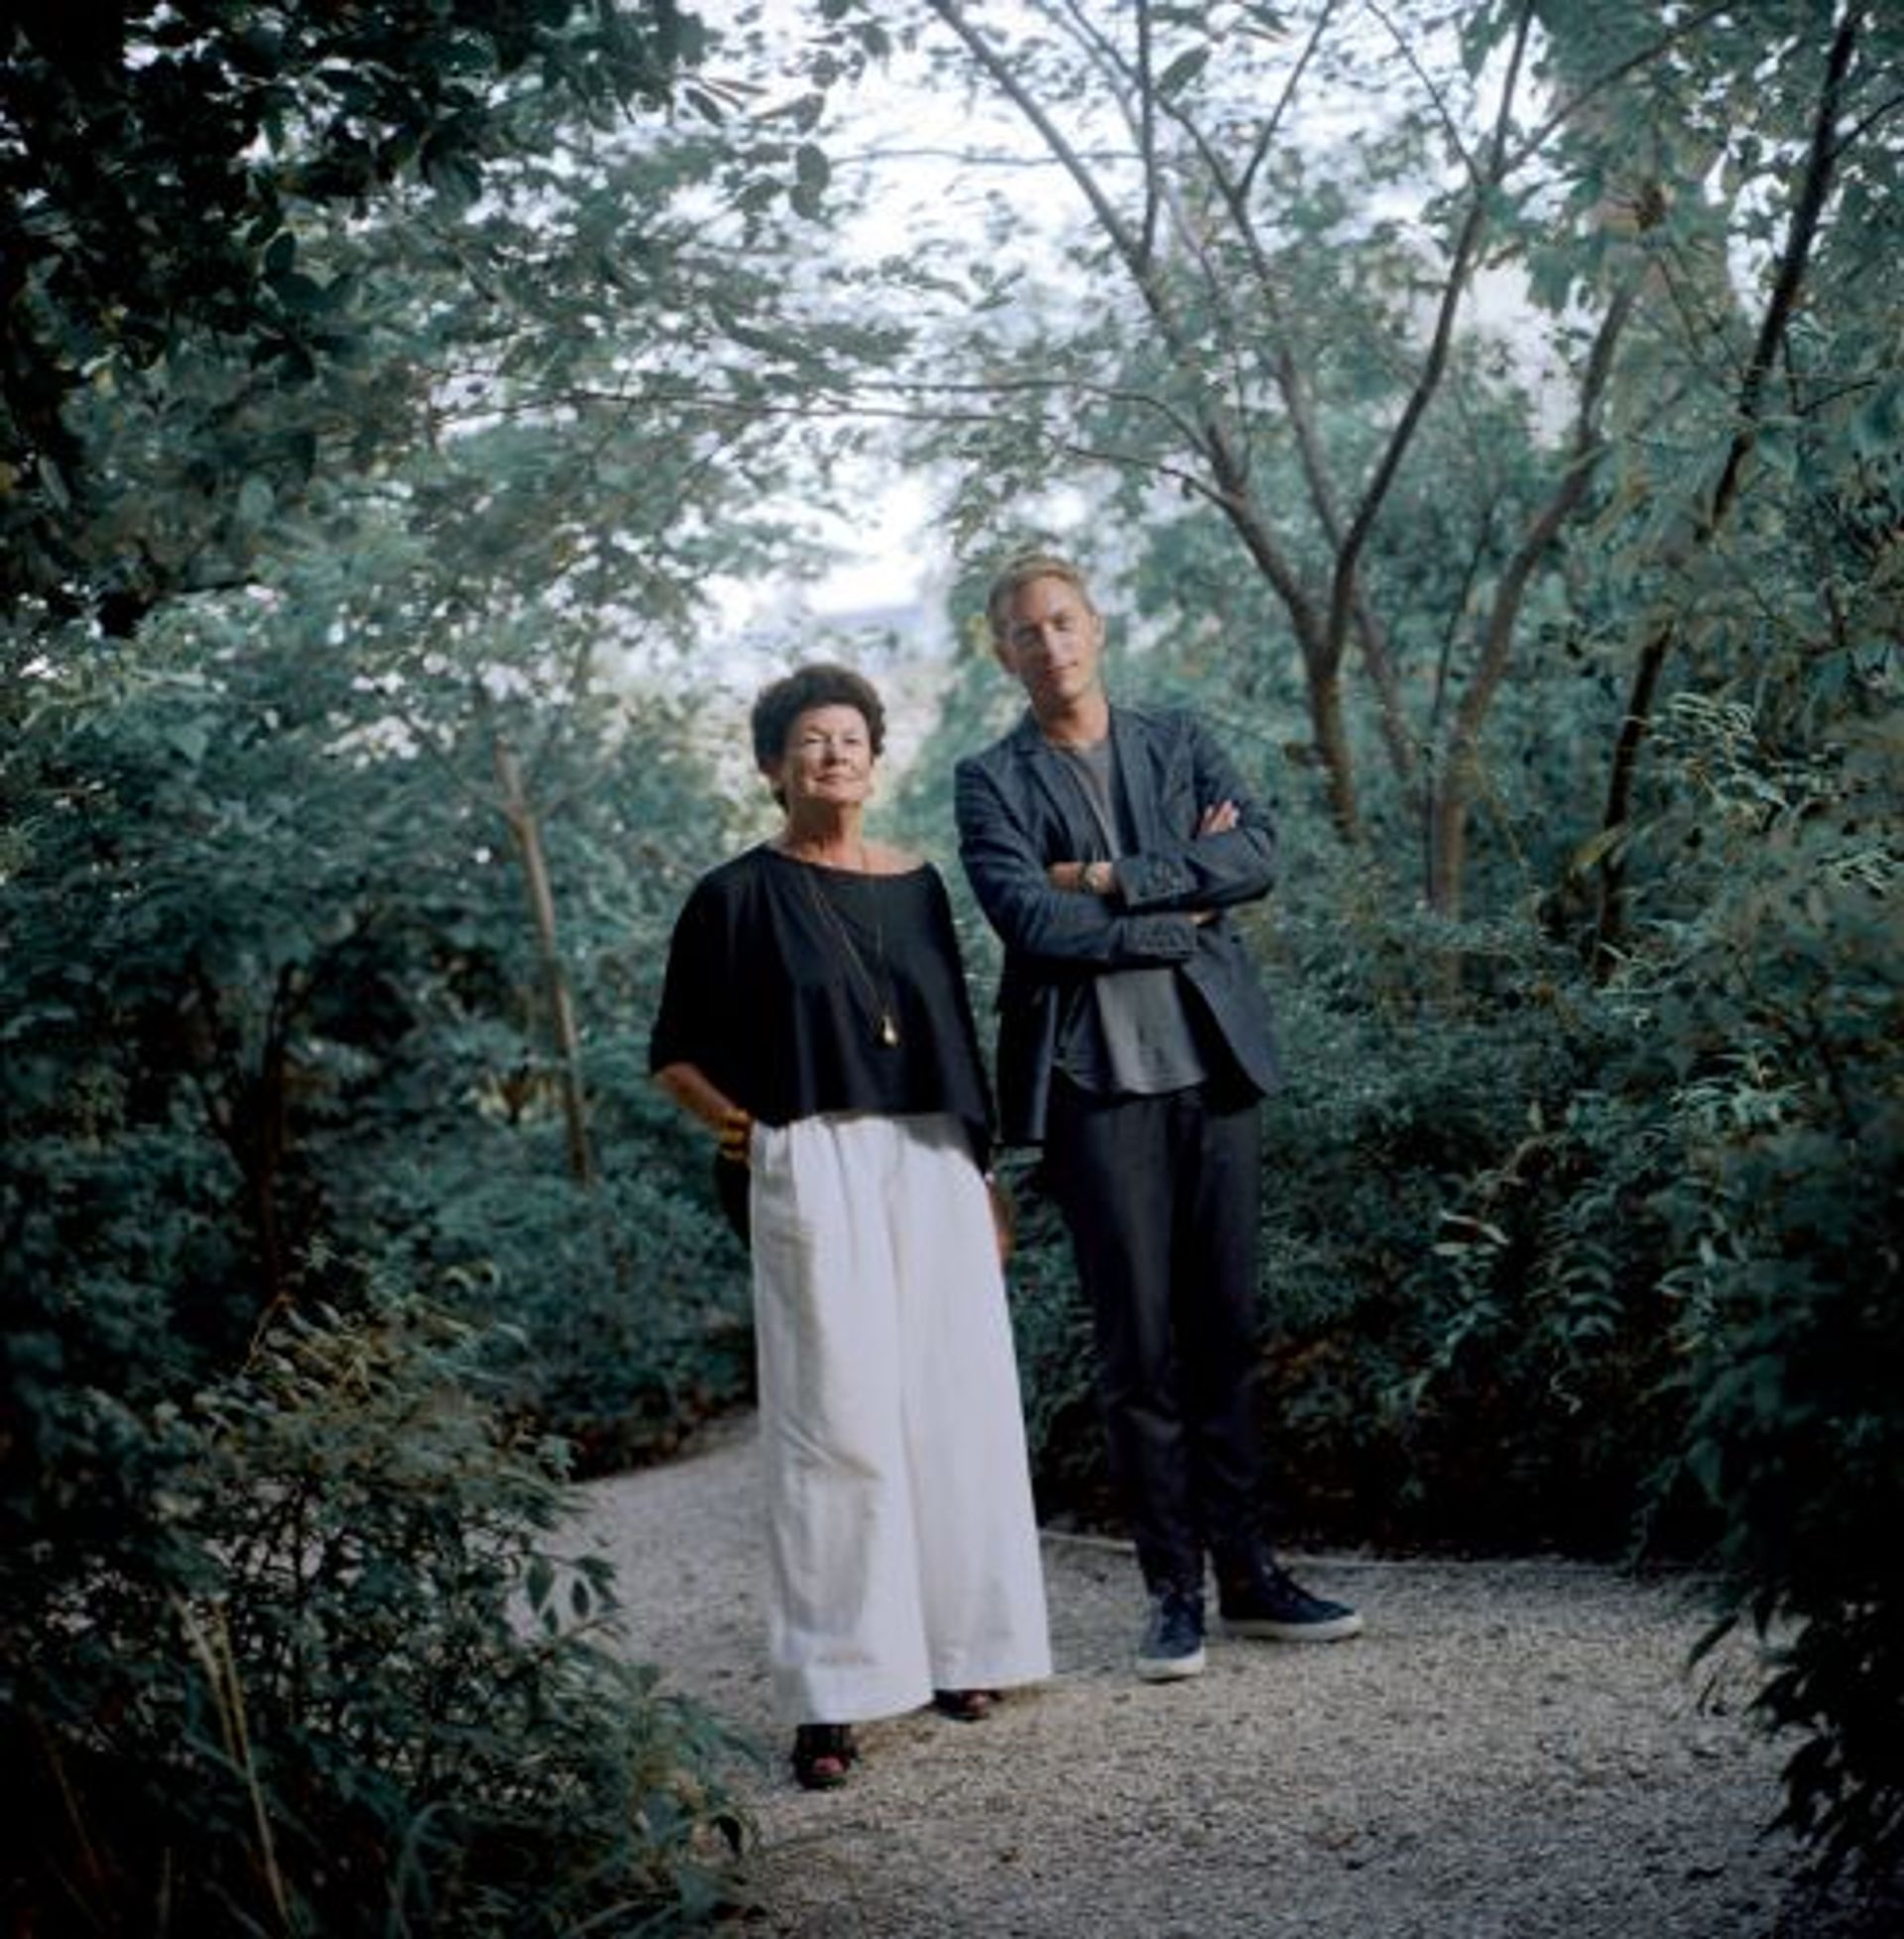 Chantal Crousel et Niklas Svennung photographiés par Jean-Luc Moulène. © Jean-Luc Moulène / ADAGP, Paris, 2021